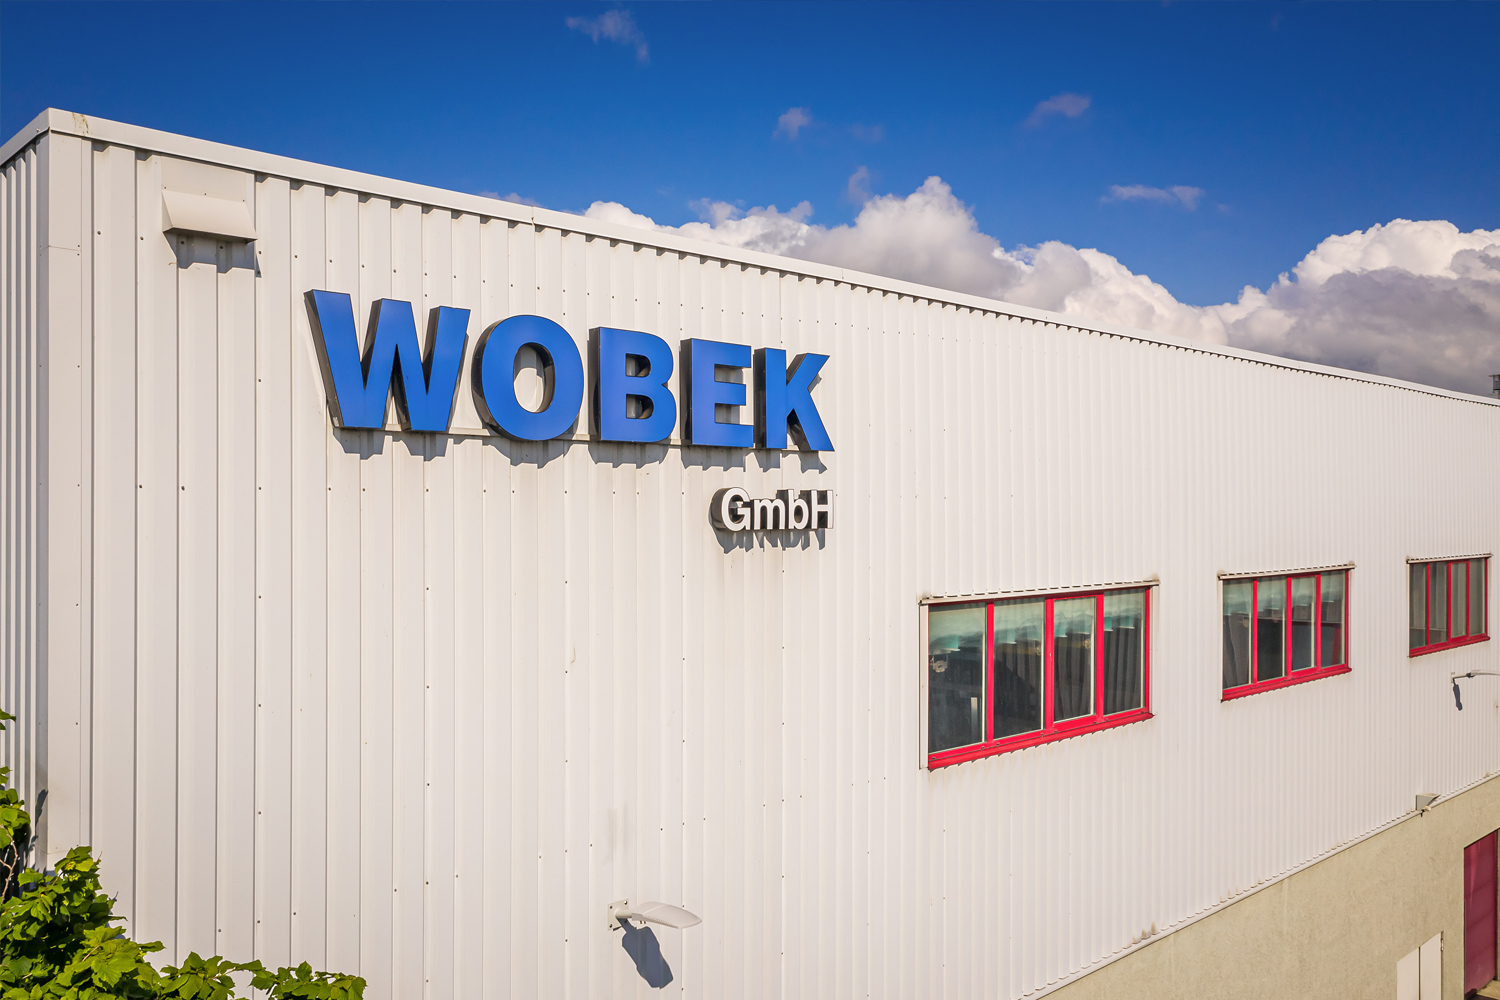 WOBEK GmbH